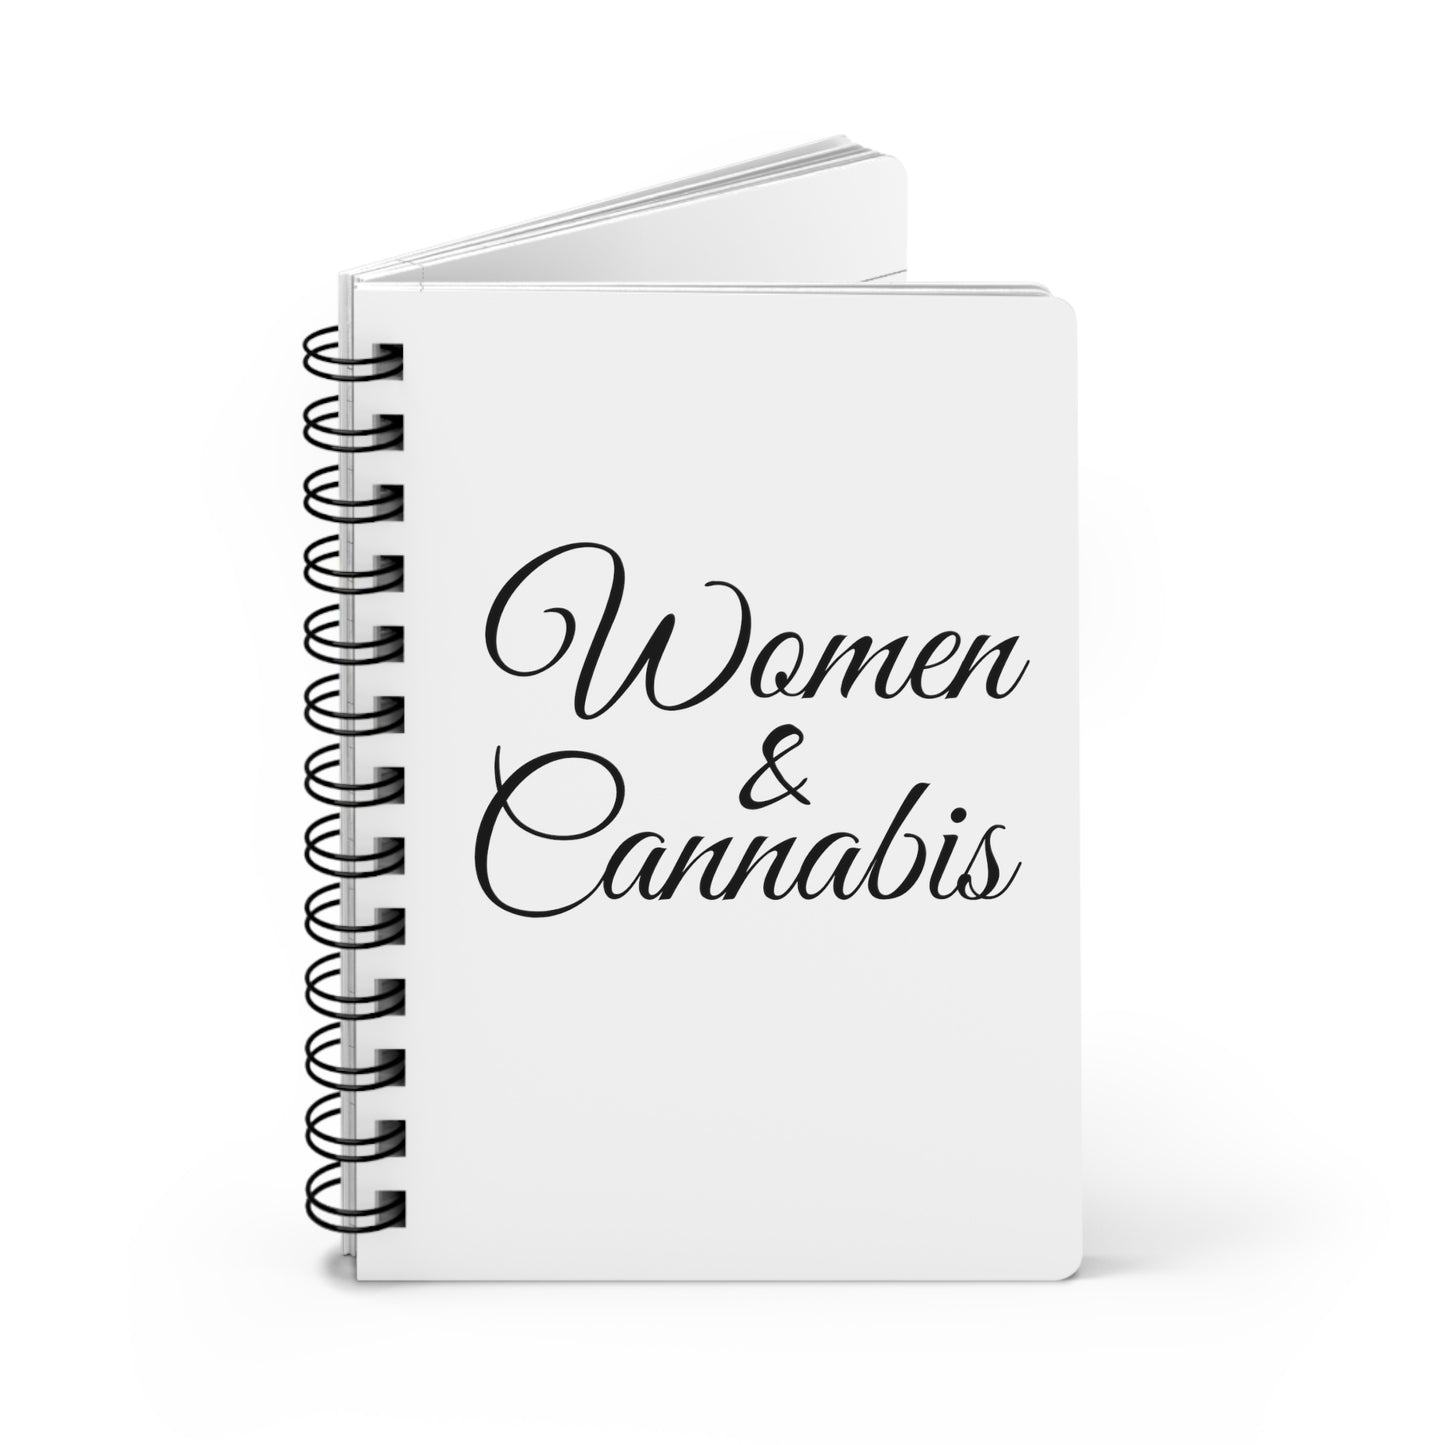 Spiral Bound Journal-Women & Cannabis